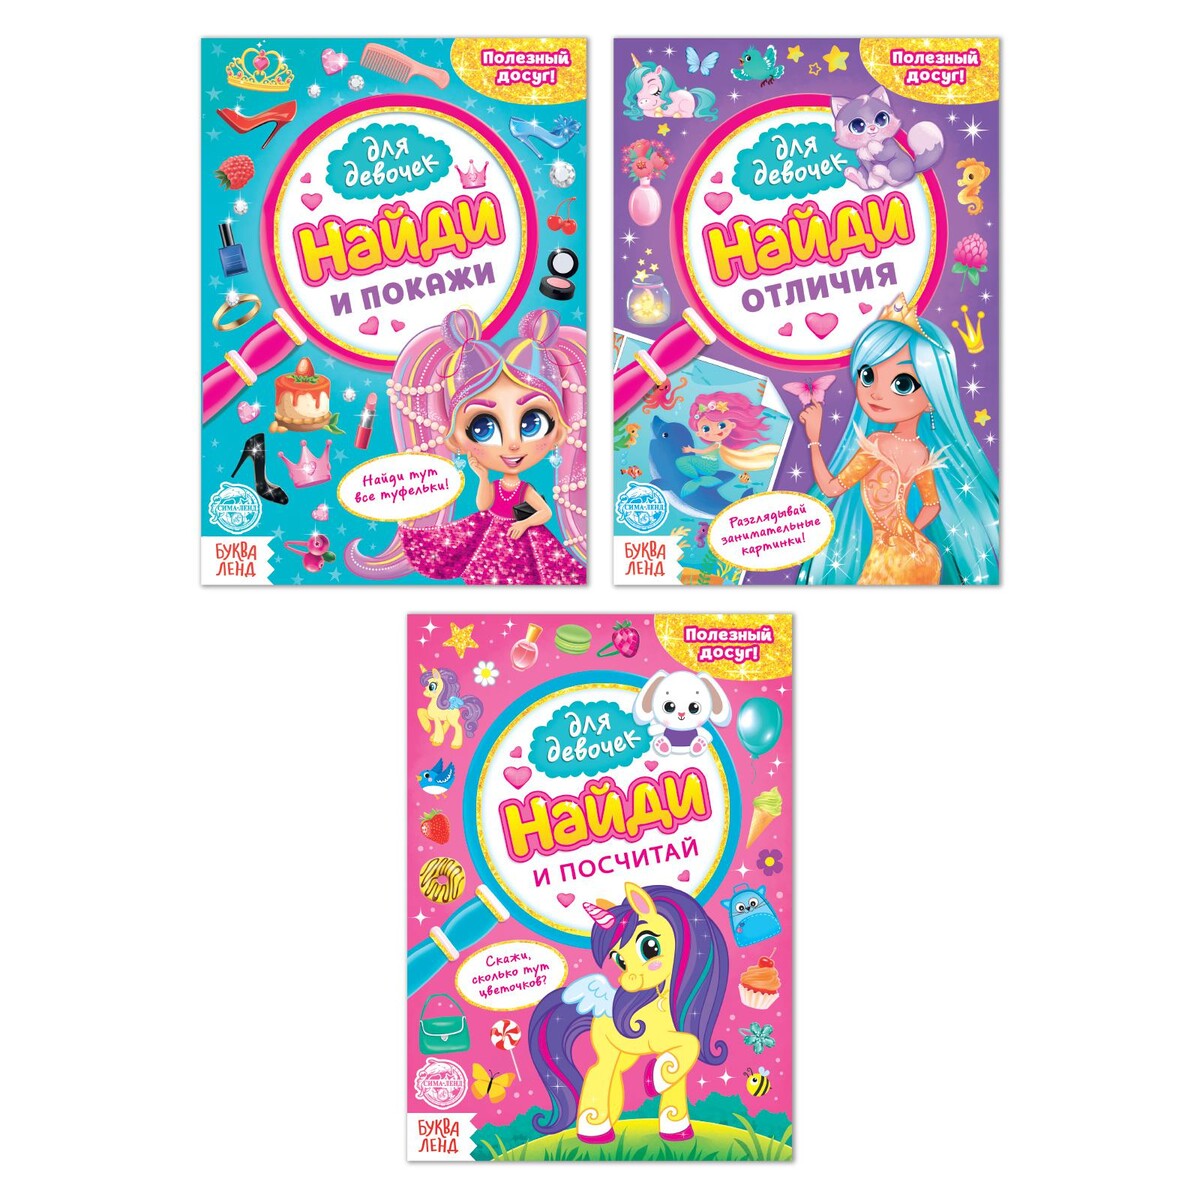 Книги для девочек набор набор раскрасок для девочек а5 комплект из 8 книг